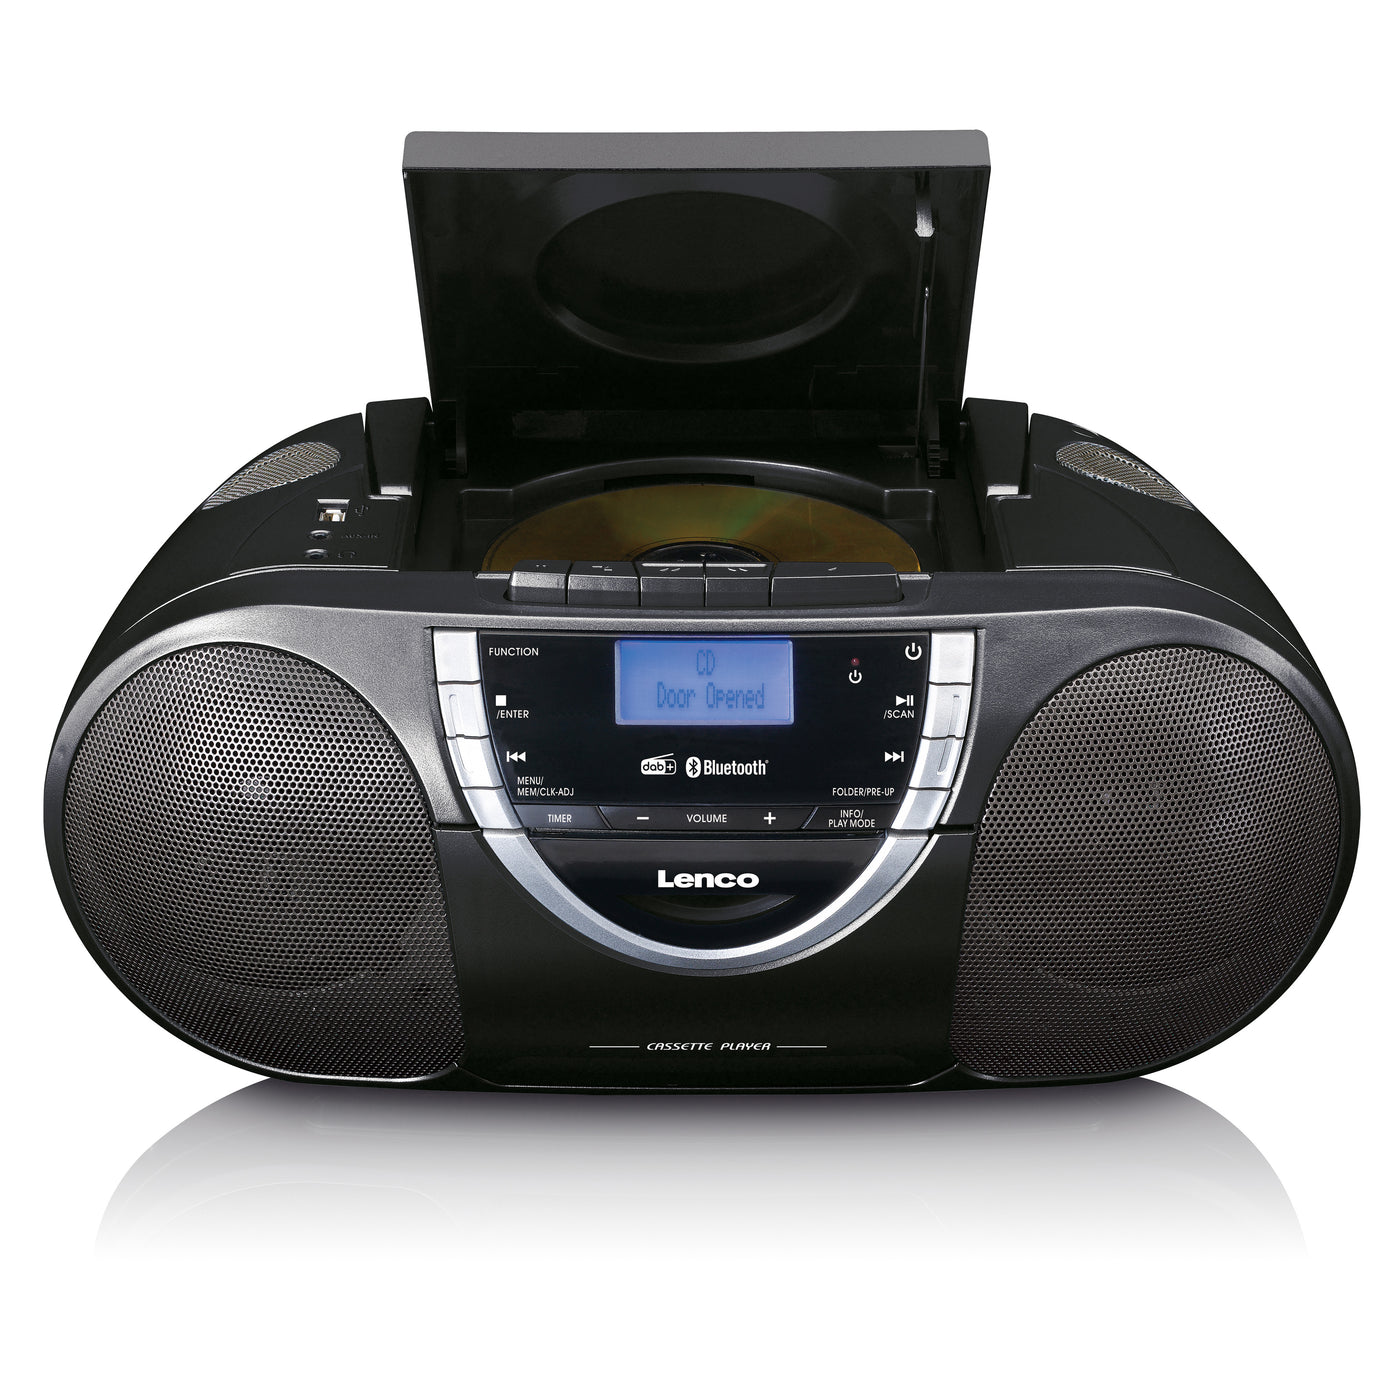 Lenco SCD-6900BK - Radio portable lecteur CD avec DAB+ et casette - Gris